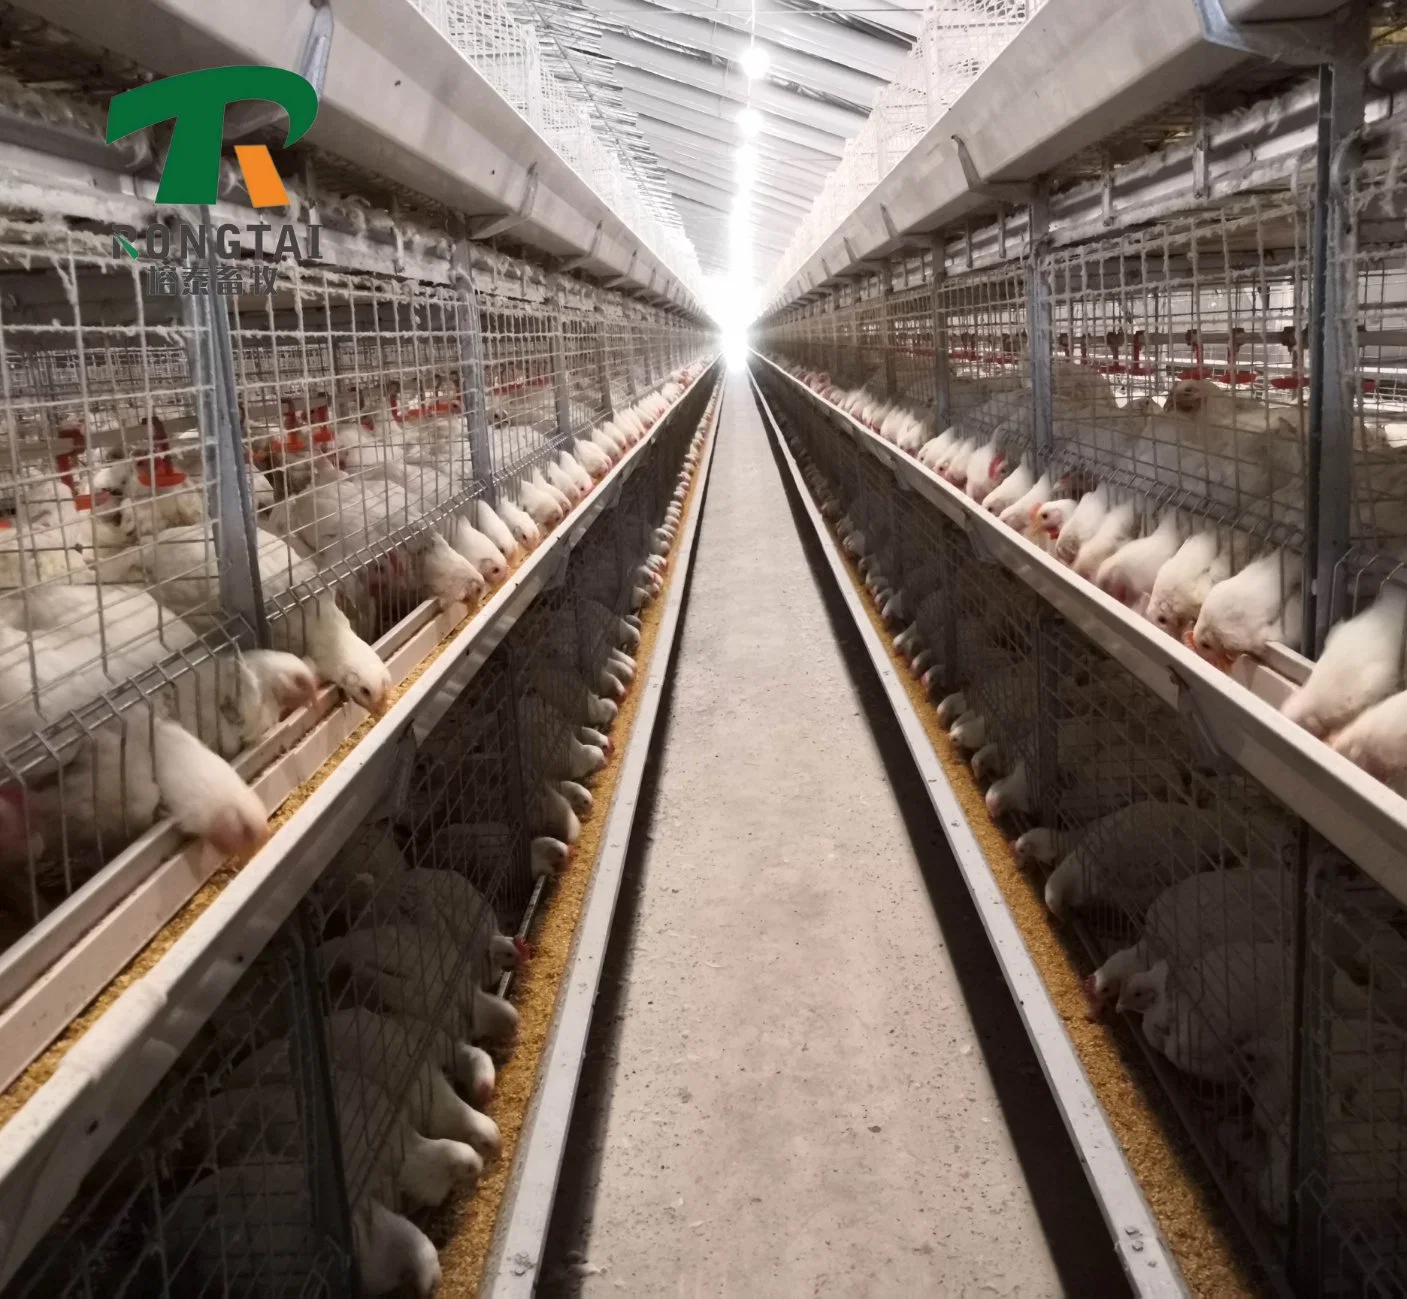 Guter Preis Automatische Geflügel Farm Ausrüstung Schicht Legen Hühner Huhn Batterieträger zum Verkauf